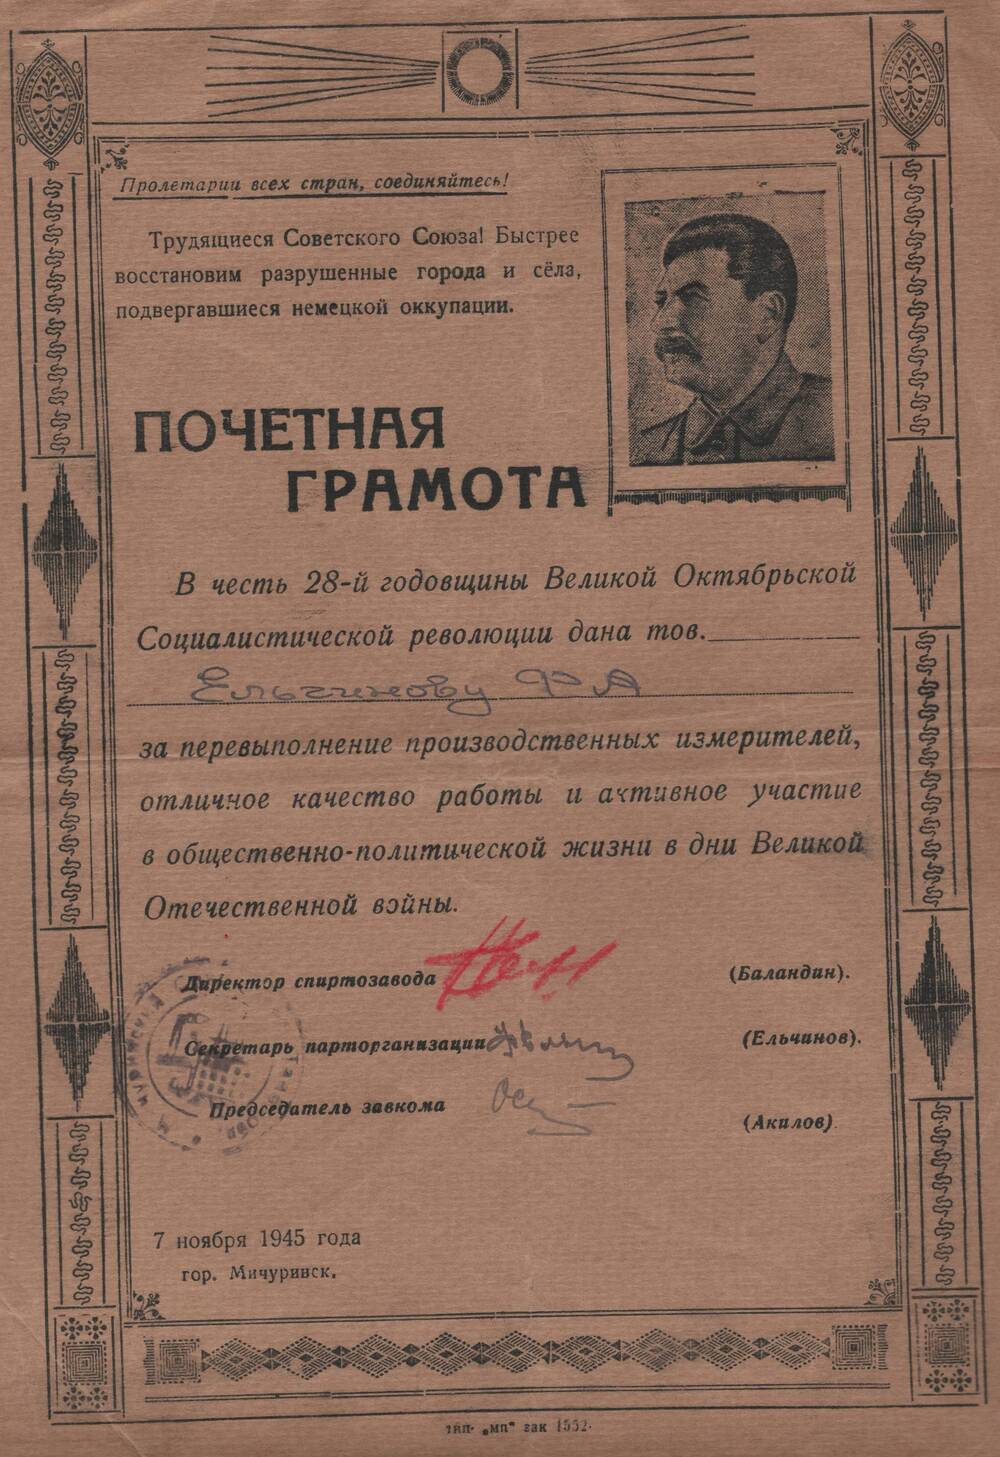 Почетная грамота, врученная секретарю парторганизации Ельчинову Ф.А., за перевыполнение производственных измерителей